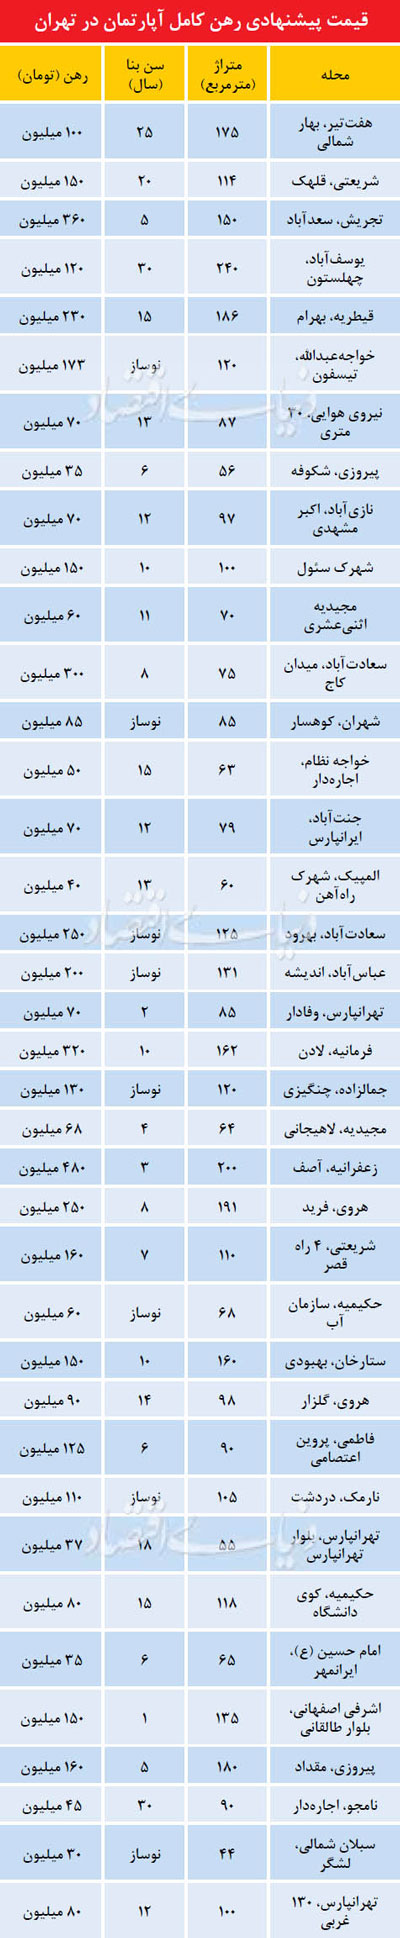 قیمت پیشنهادی رهن آپارتمان در تهران